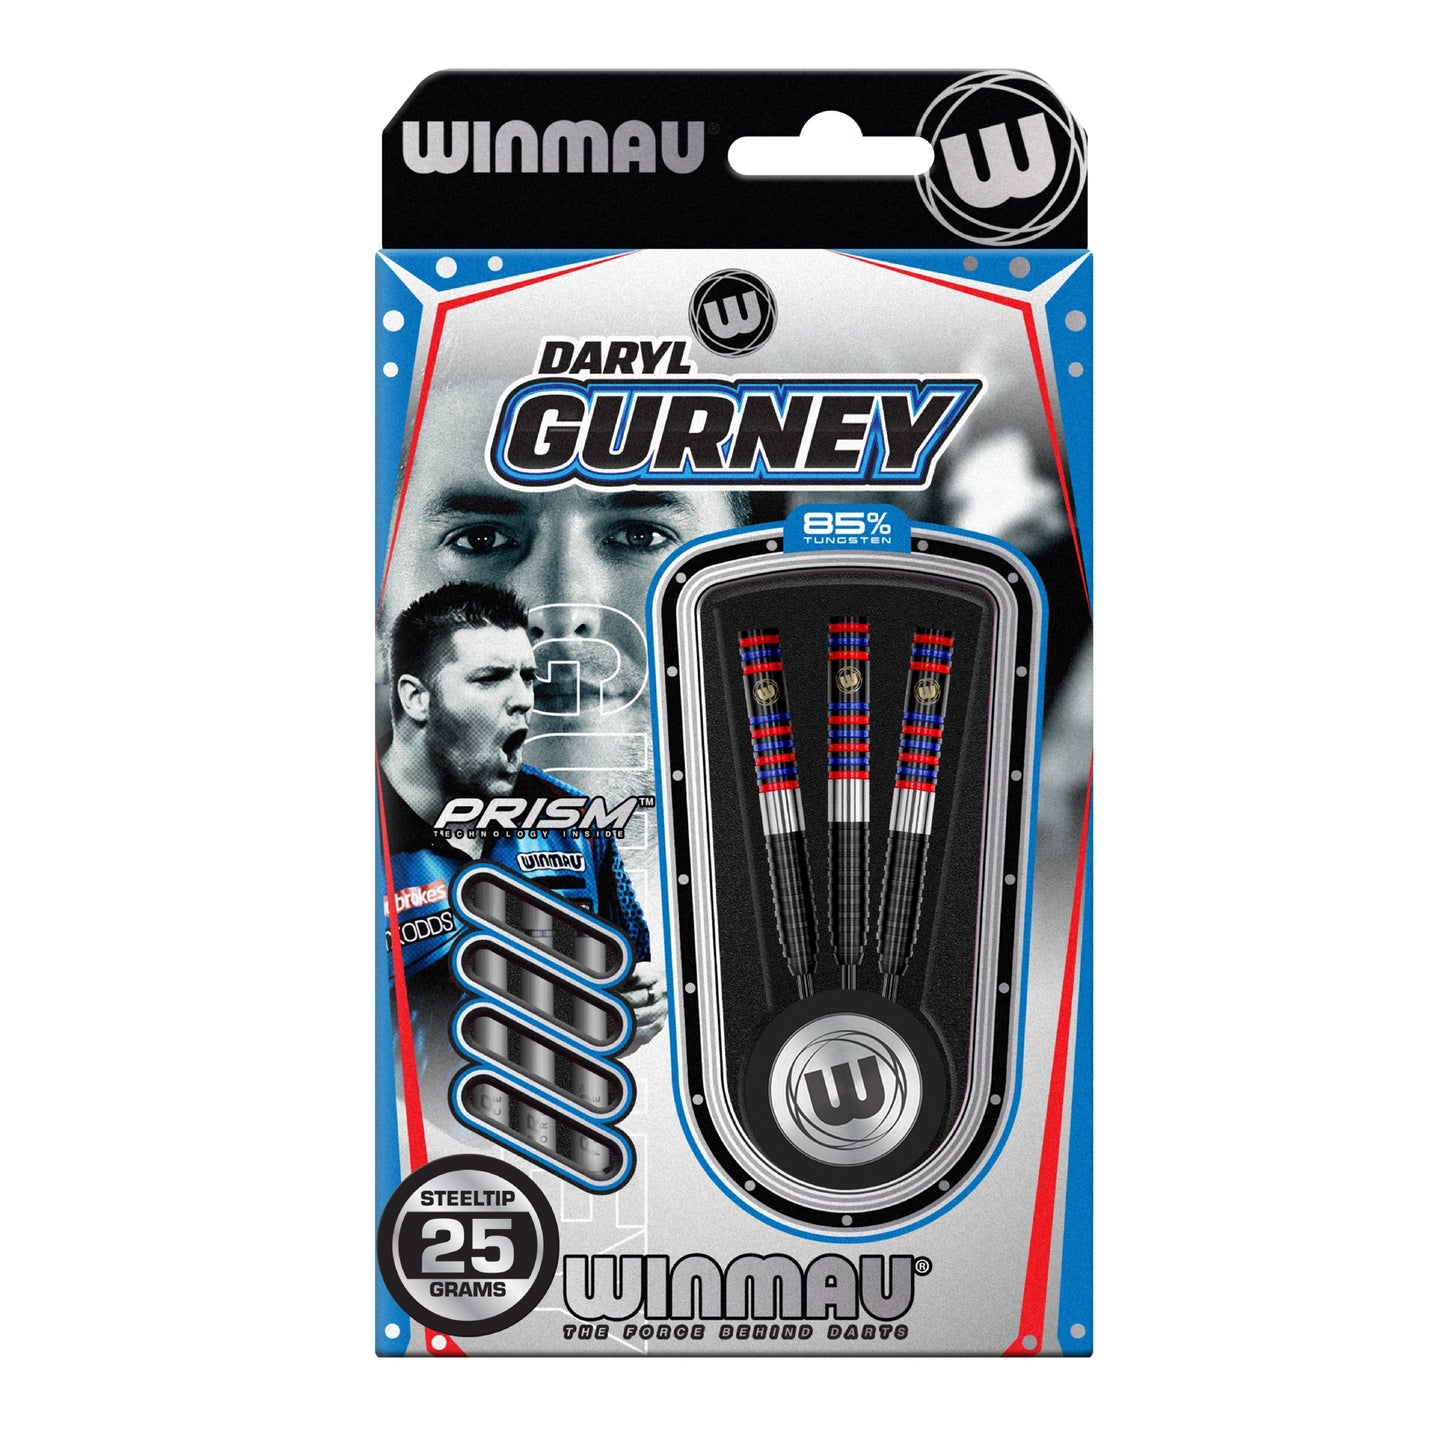 Winmau Daryl Gurney 85% Tungsten Darts 25G